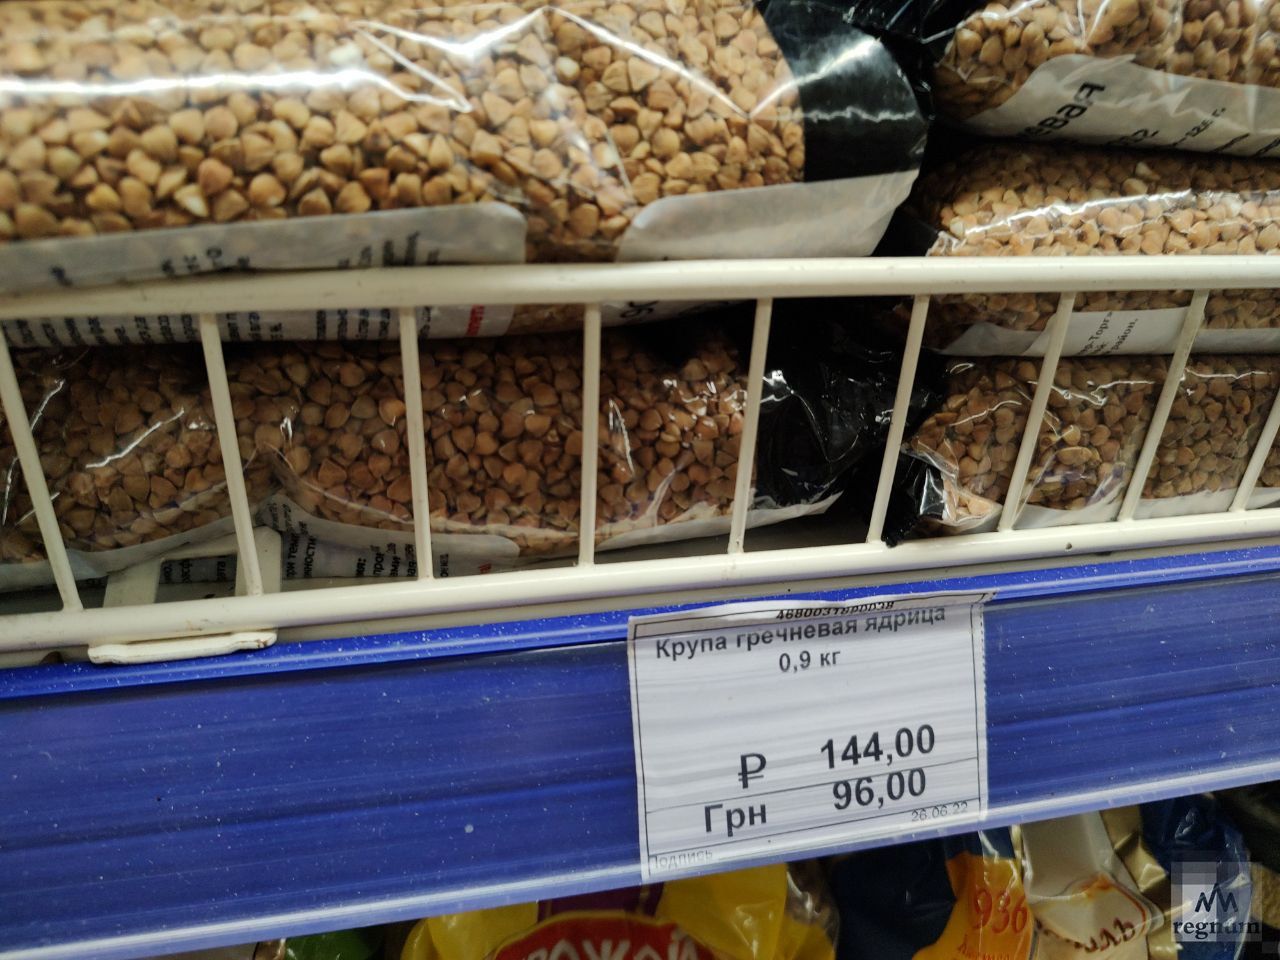 Цены на продукты в магазине Мариуполя. Гречневая крупа